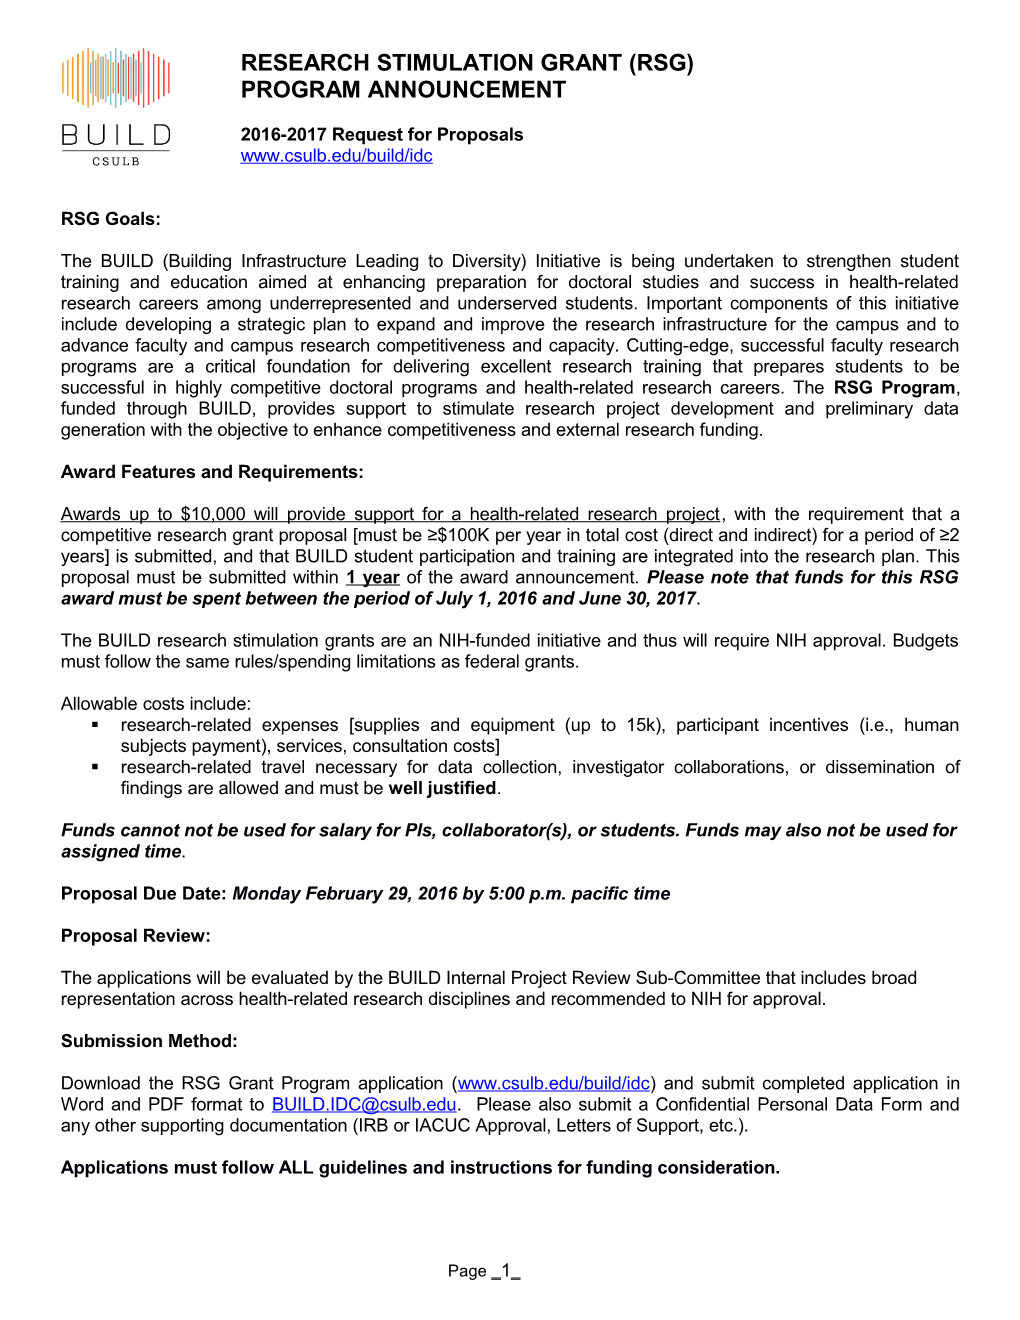 Collaborative Research Stimulation Grant (CRSG) Program Application, BUILD CSULB